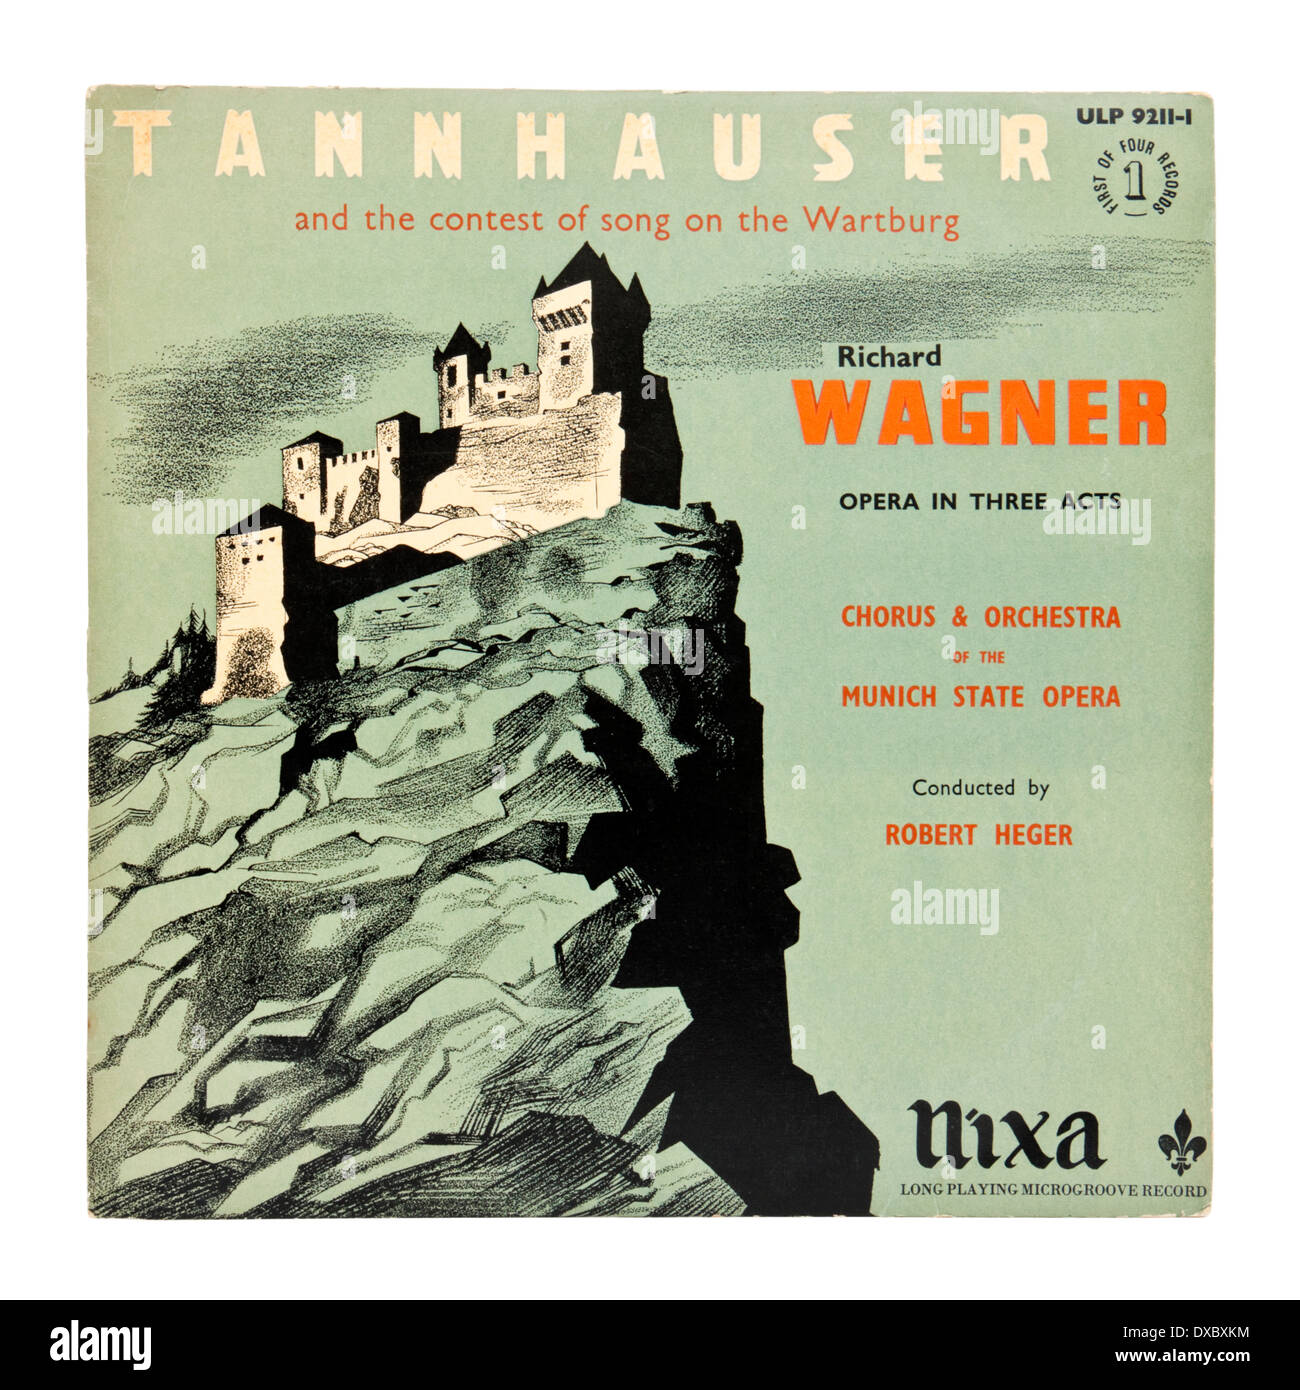 Classica record di vinile / LP - "Tannhauser', opera lirica in tre atti di Richard Wagner. Coprire mostra il Castello di Wartburg in Germania. Foto Stock